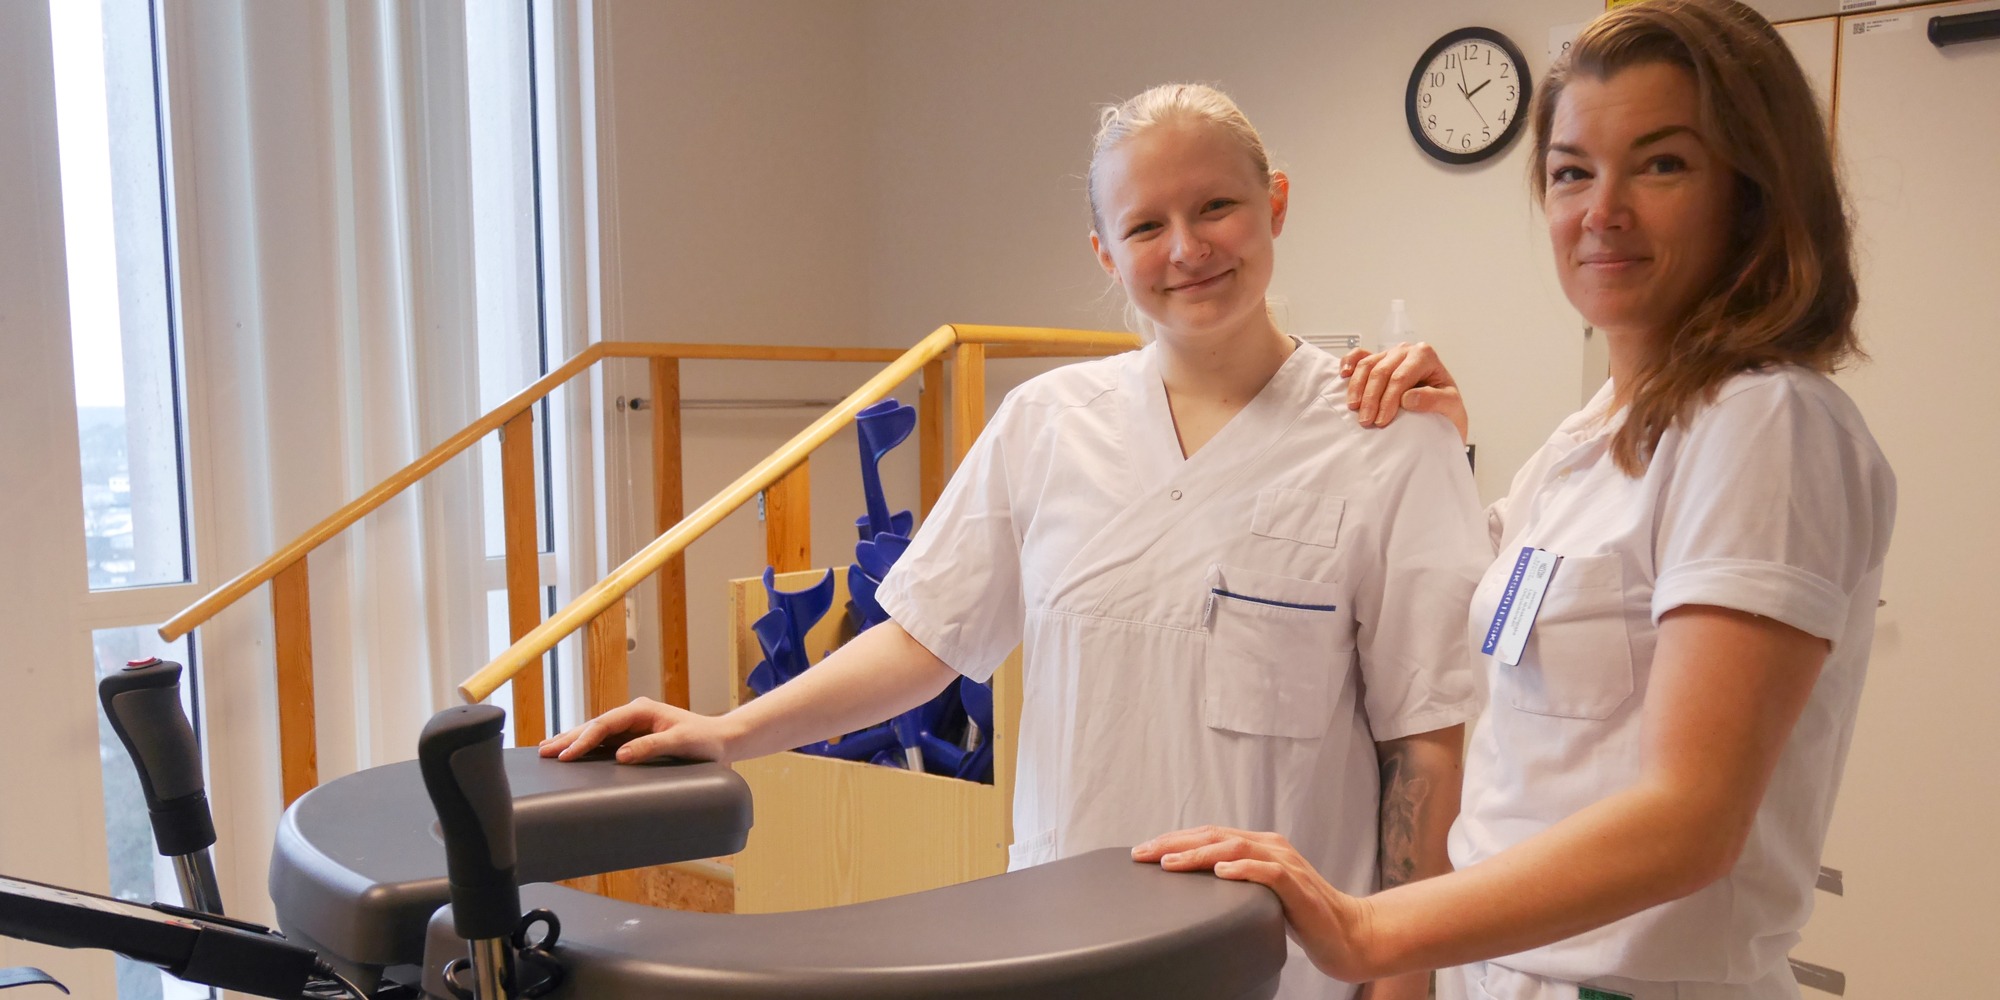 Utbildningen i fallteknik gjorde dem tryggare och skapade bättre sammanhållning. Det berättar sjuksköterskorna Jennifer Sörensen och Jessica Bark Alm på ortopeden, Nyköpings lasarett.